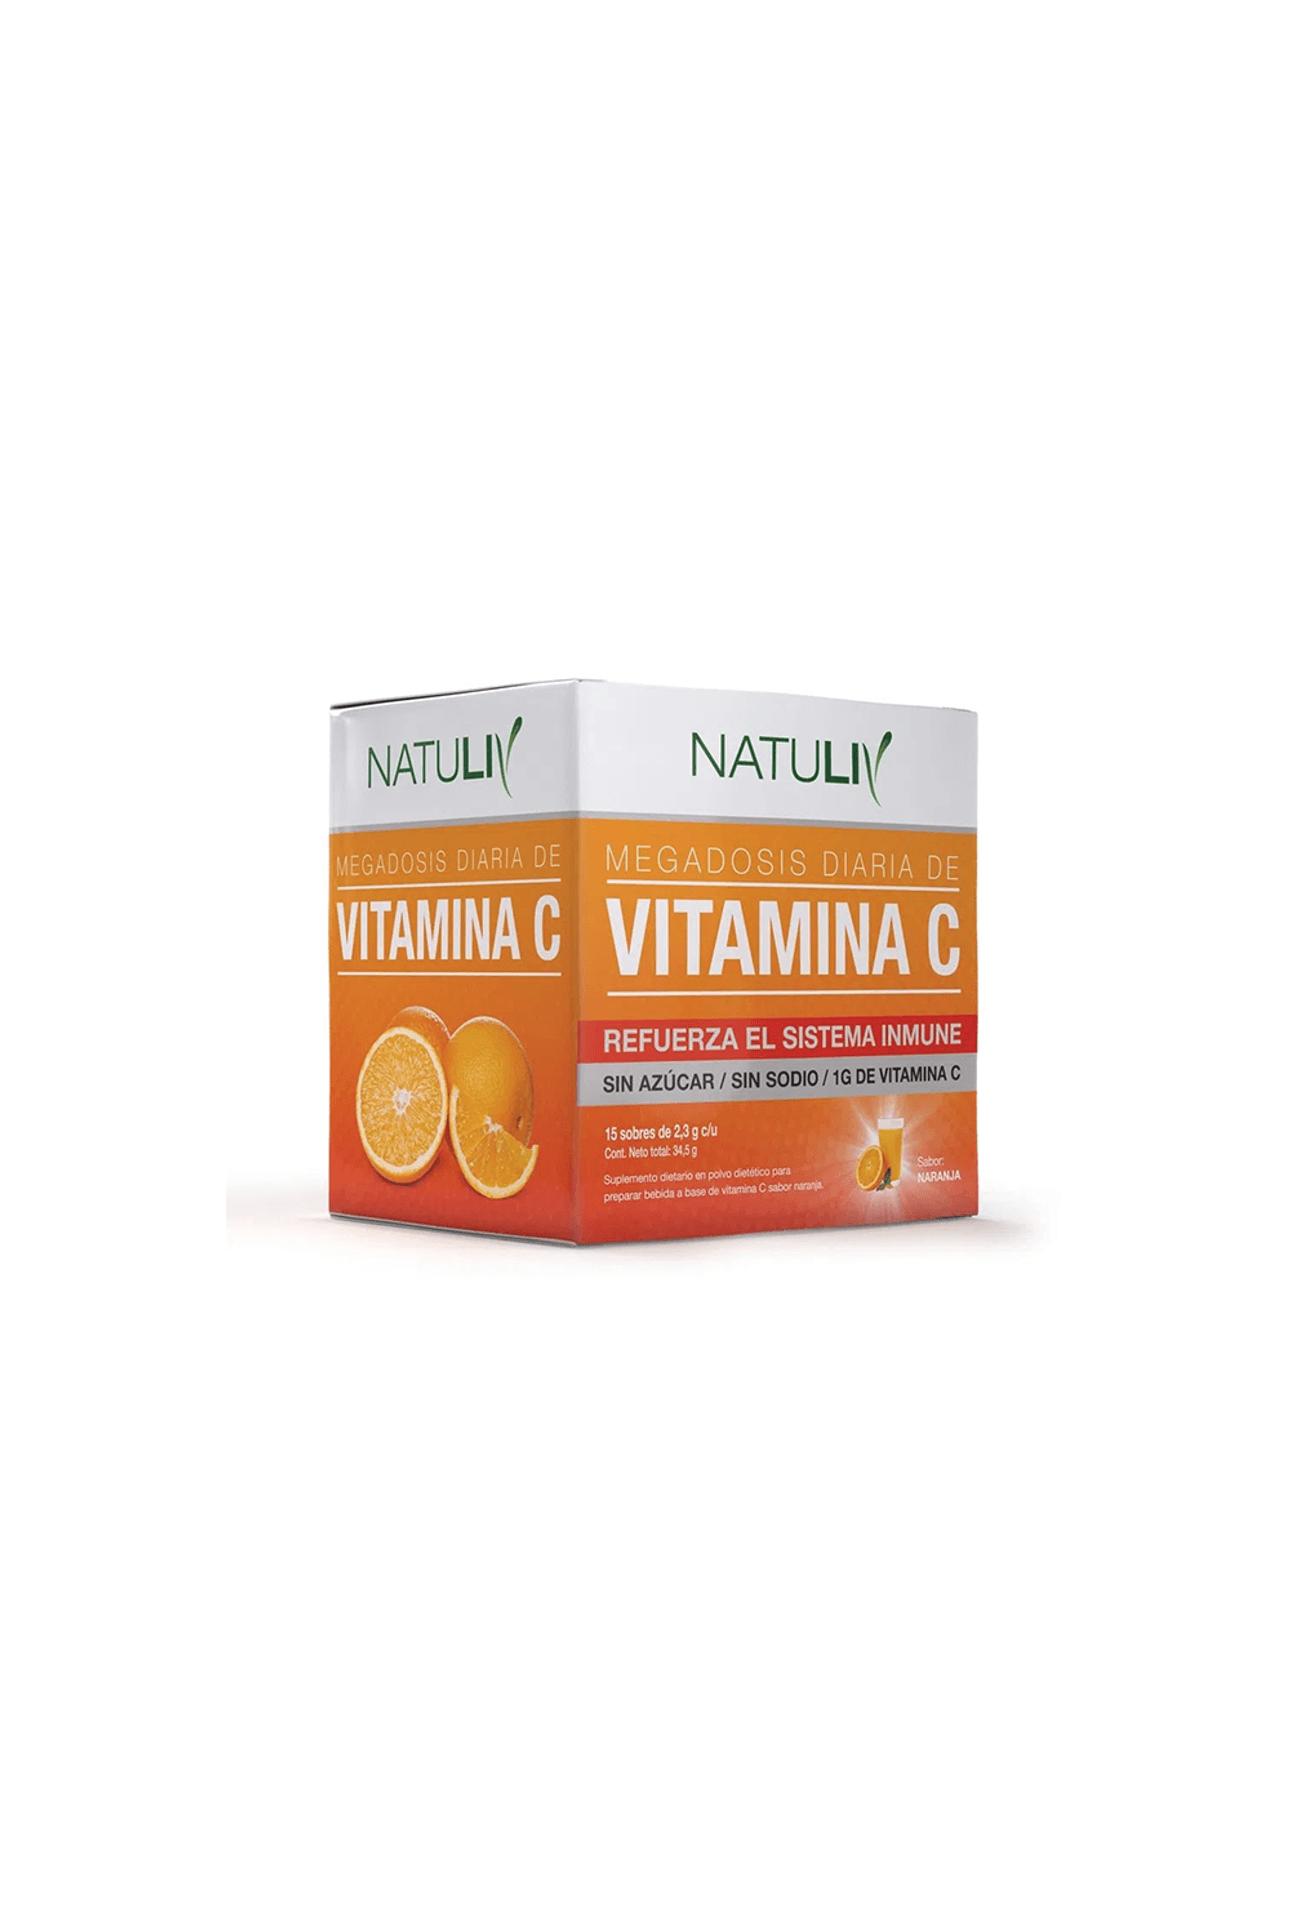 57433_Natuliv-Vitamina-C-sobre-x-15_img1